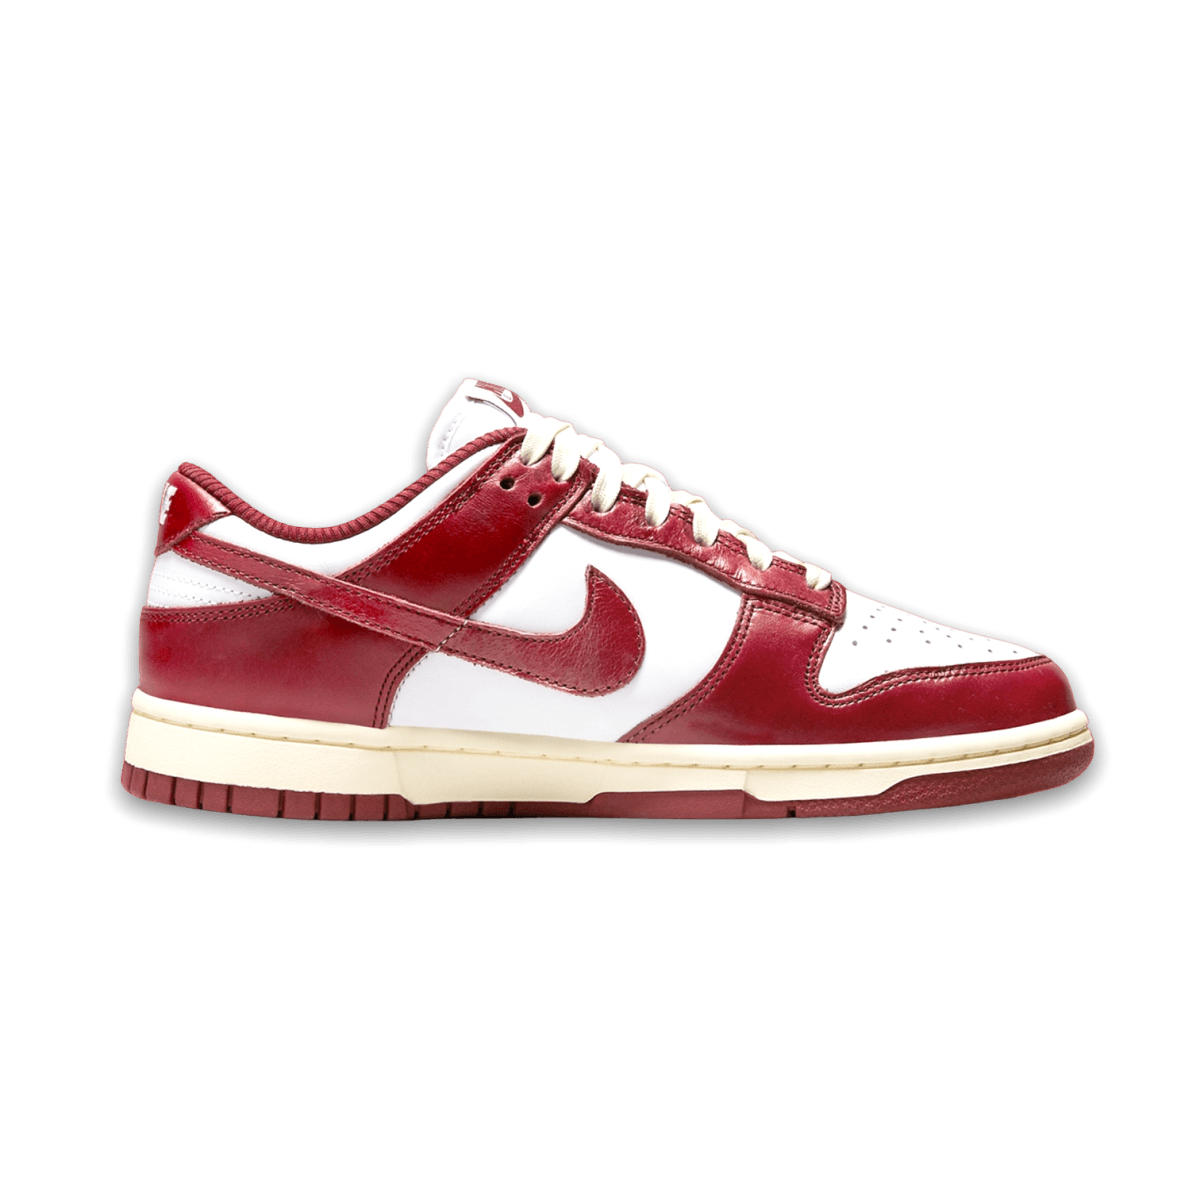 Dunk Low Vintage Team Red - Women - Low Sneaker - Jawns on Fire Sneakers & Streetwear